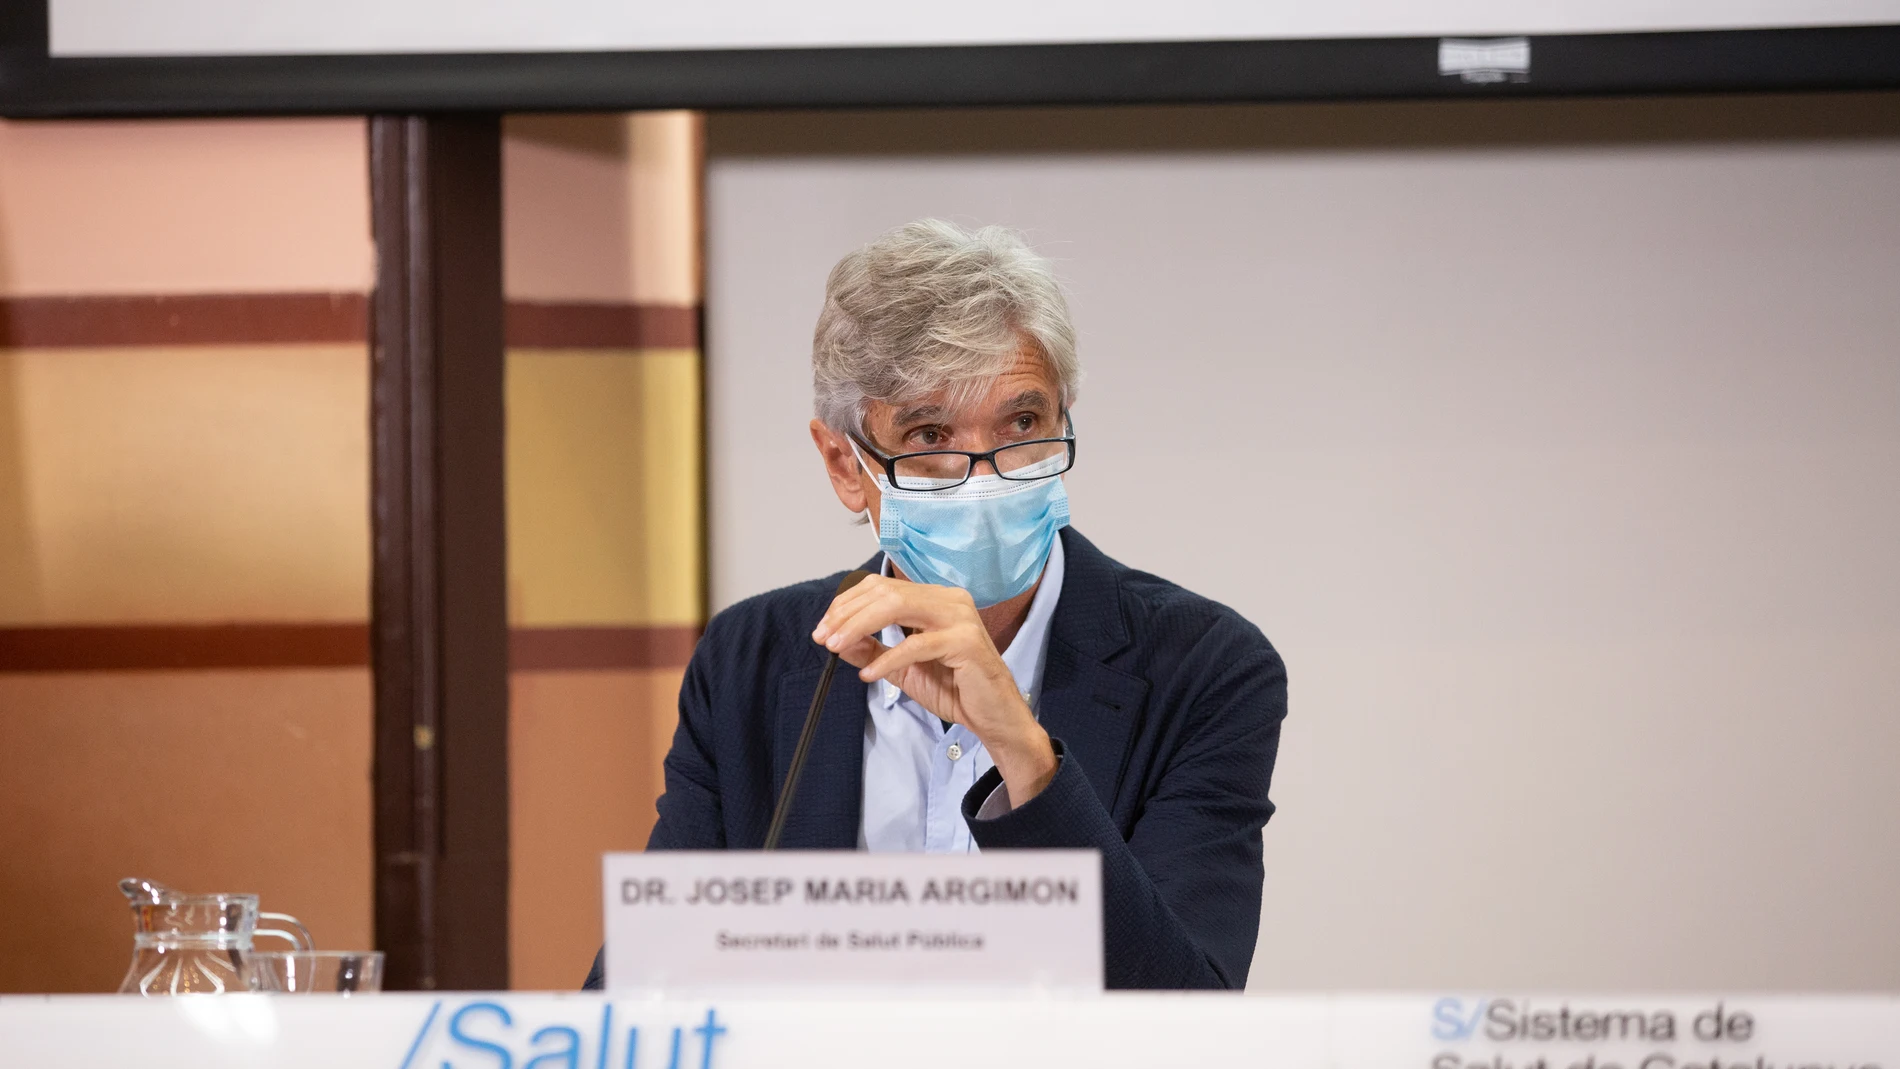 El secretario de Salud Pública de la Generalitat, Josep Maria Argimón, en una rueda de prensa en la conselleria de Salud. David Zorrakino / Europa Press